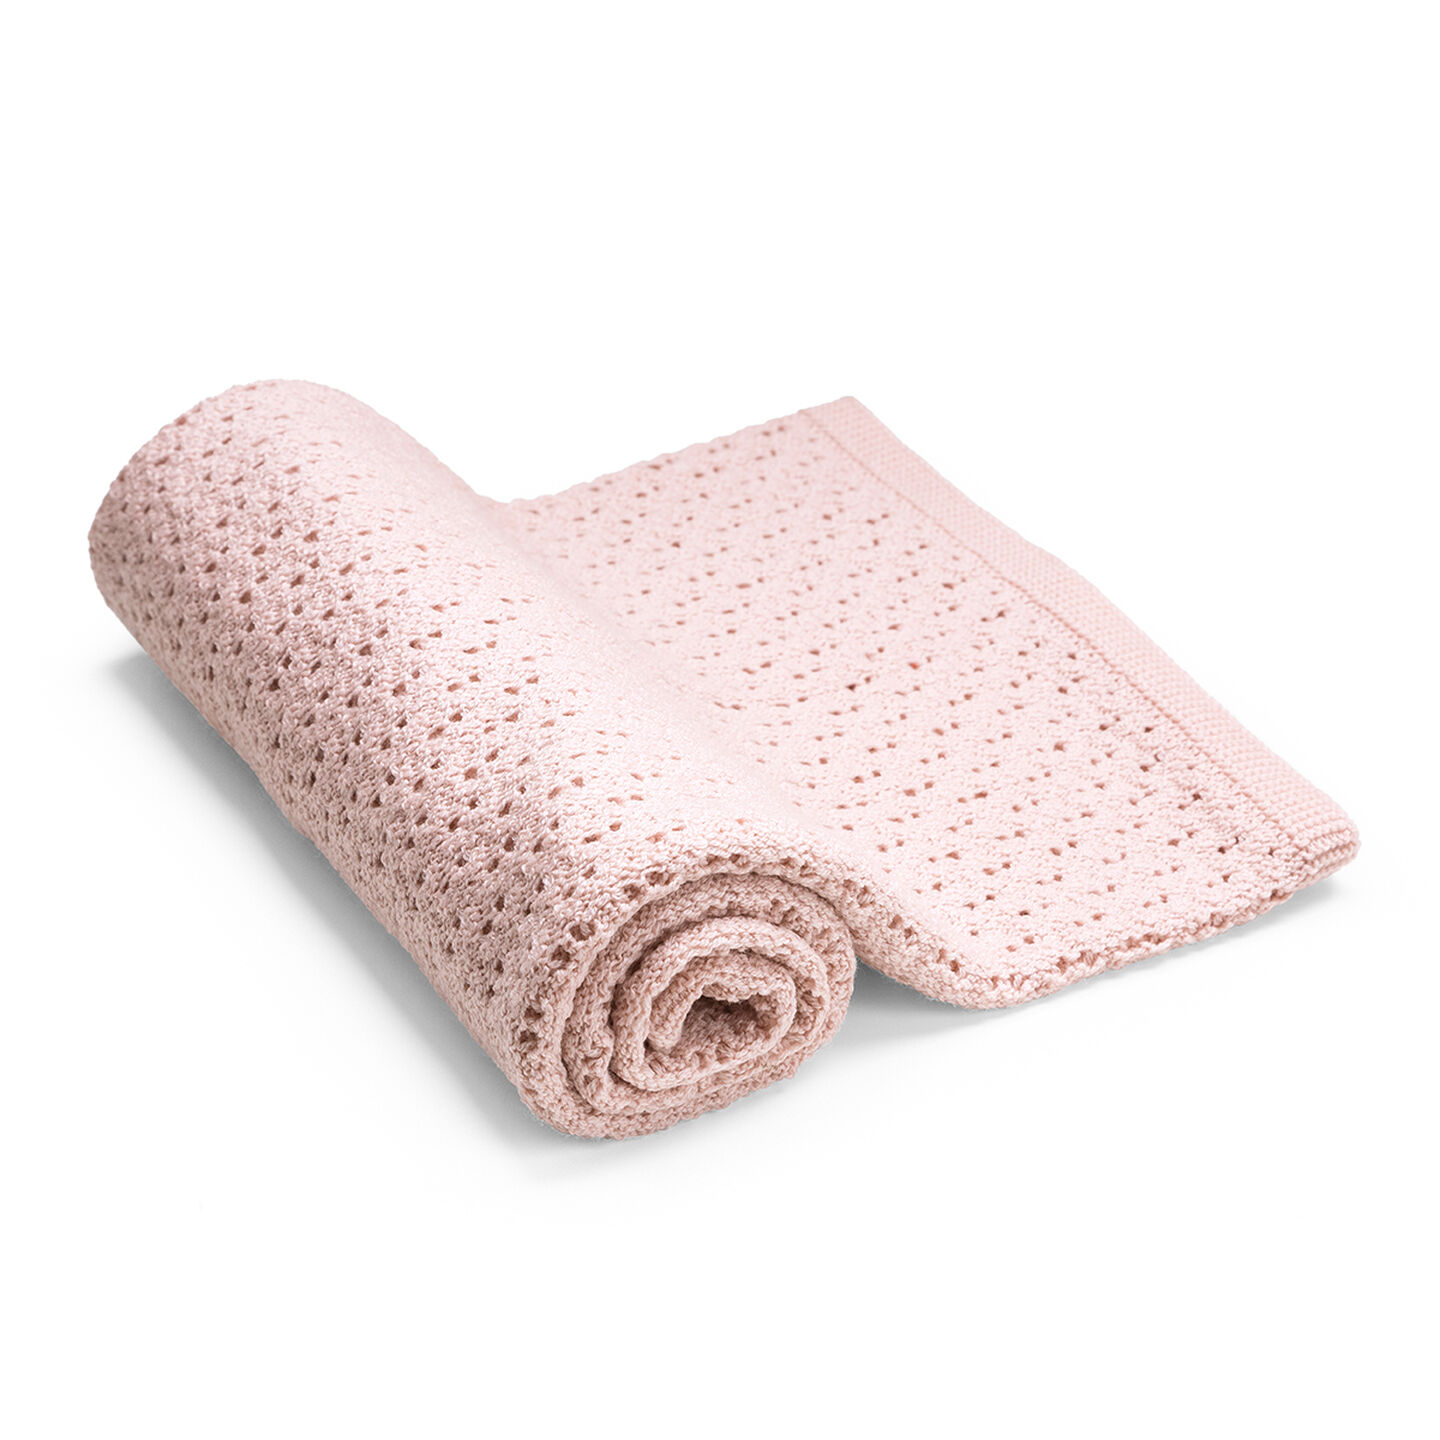 Stokke® Blanket Merino Wool Pink, Pink, mainview view 1